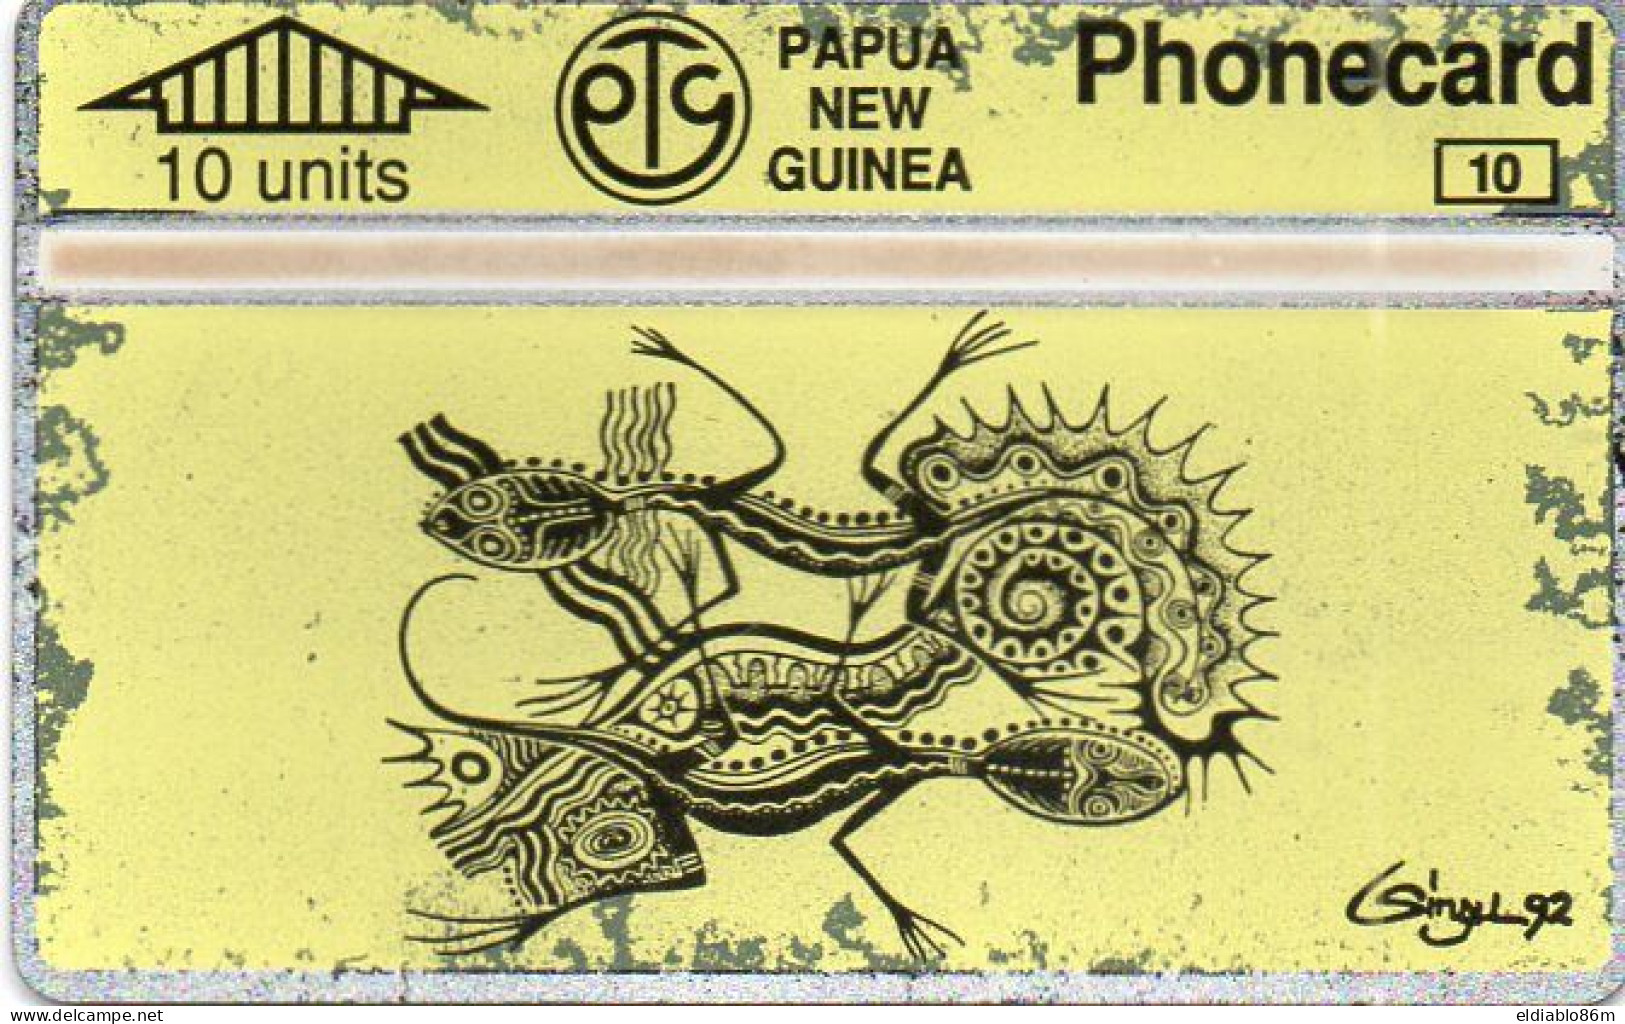 PAPUA NEW GUINEA - L&G - PNG-23 - ART YELLOW CARD - 401A - Papua-Neuguinea